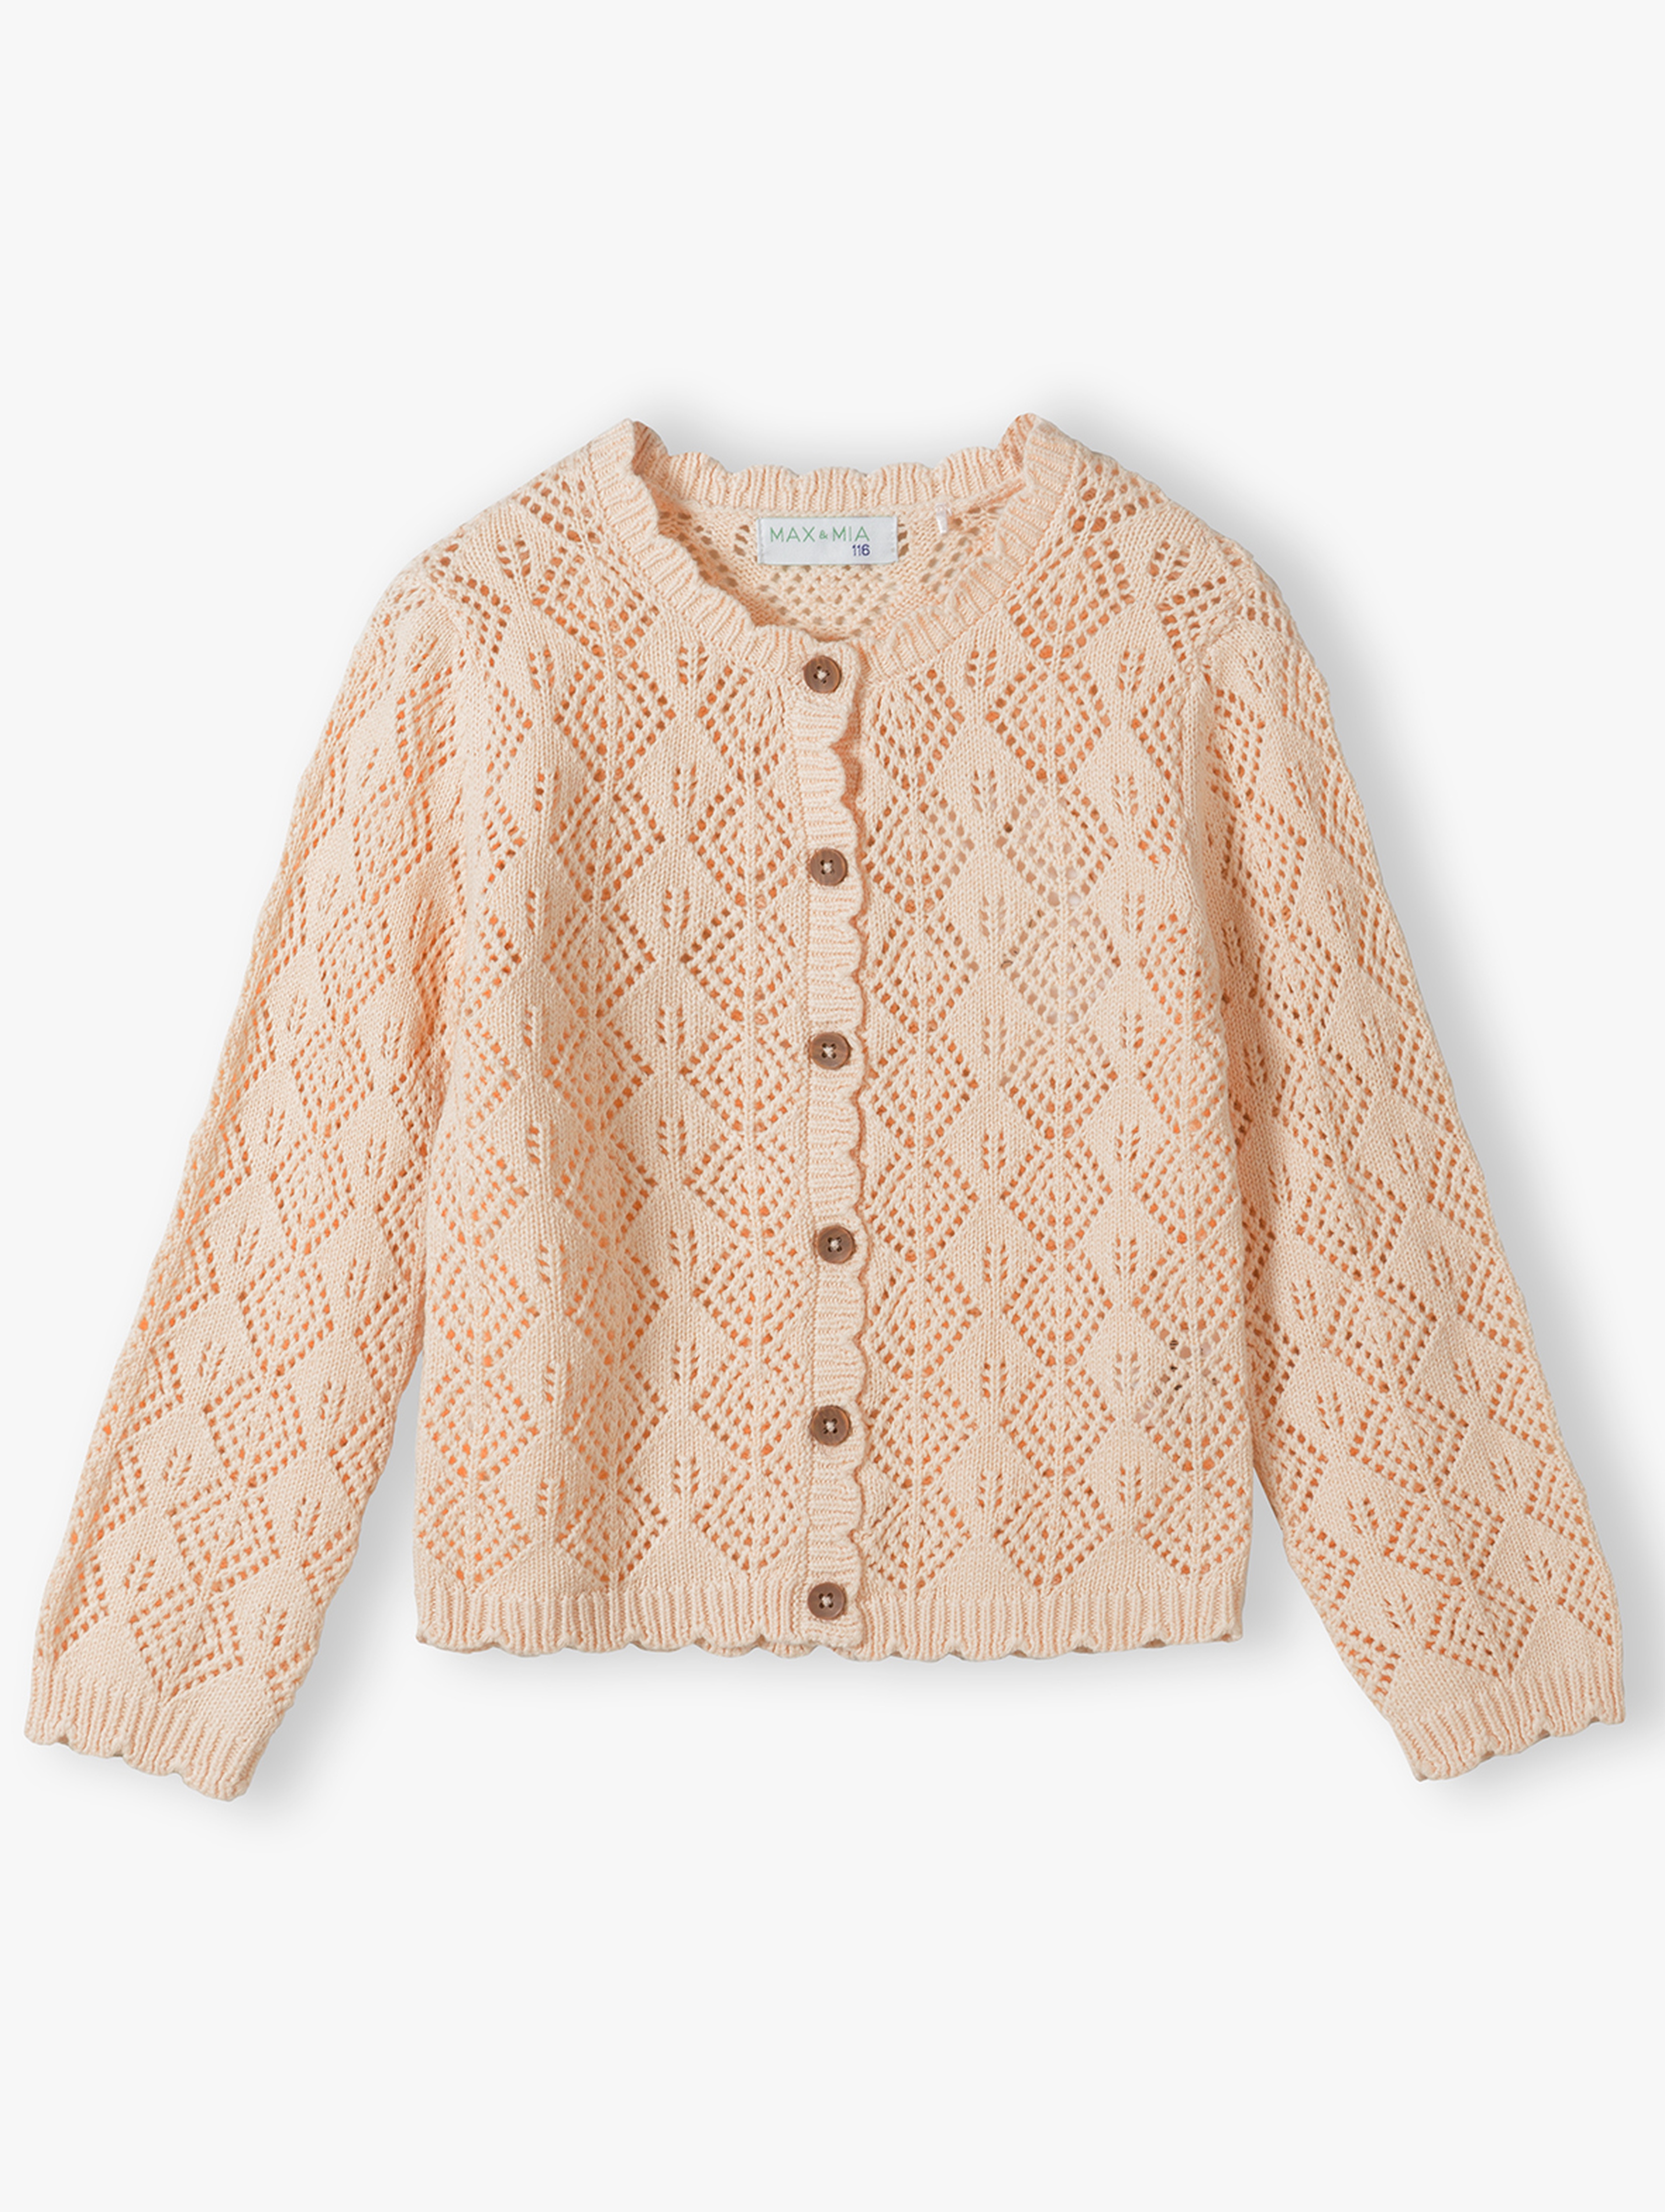 Ażurowy sweter dla dziewczynki - ecru